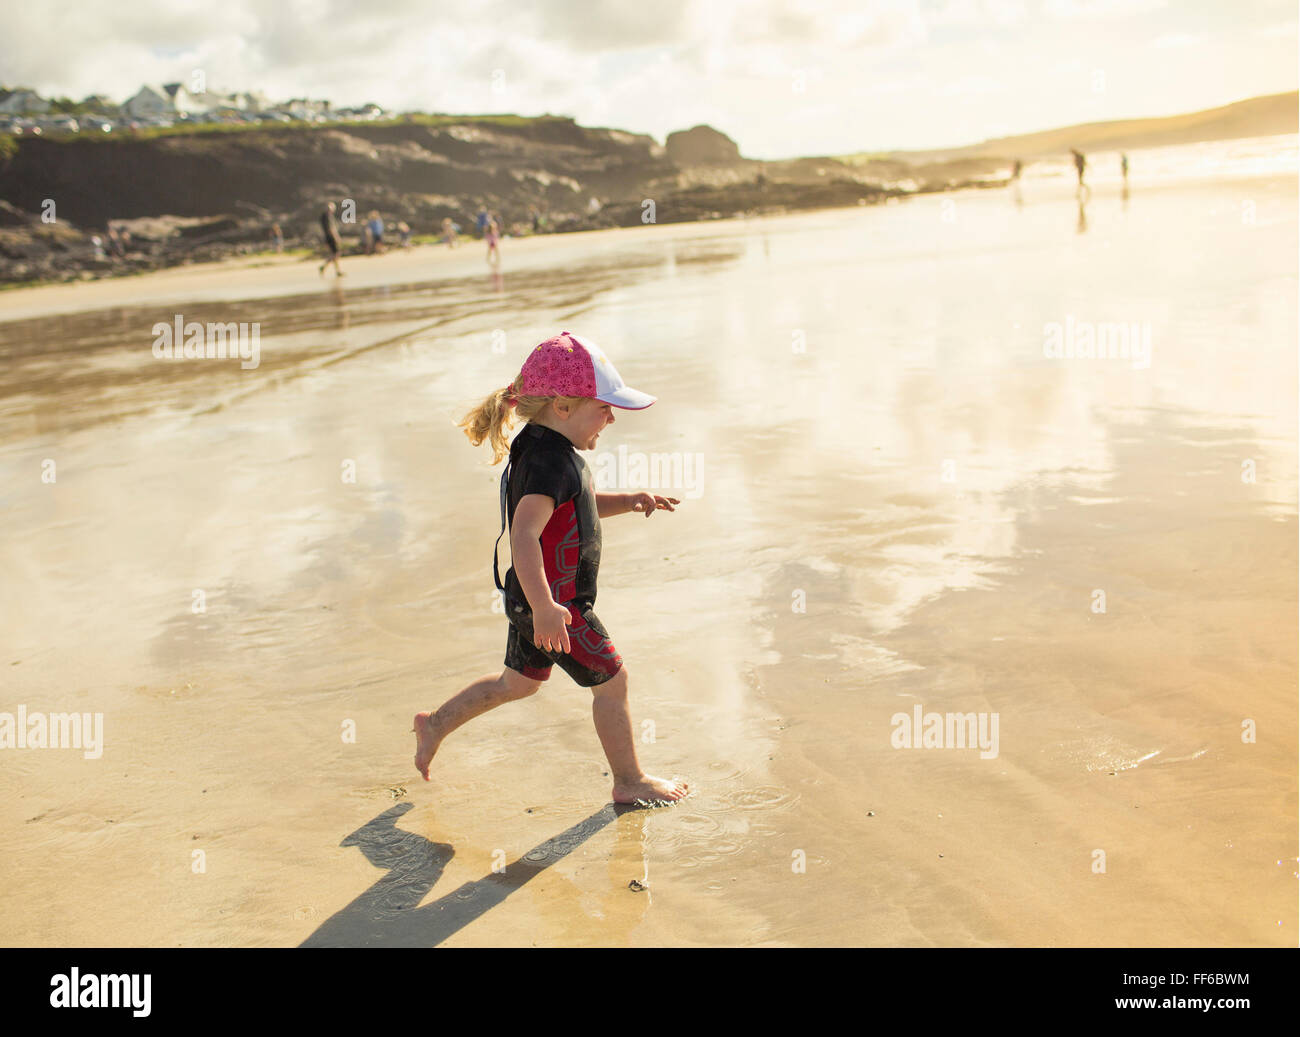 Ein Kind in einen Neoprenanzug und Sonnenhut auf Sand laufen Stockfoto